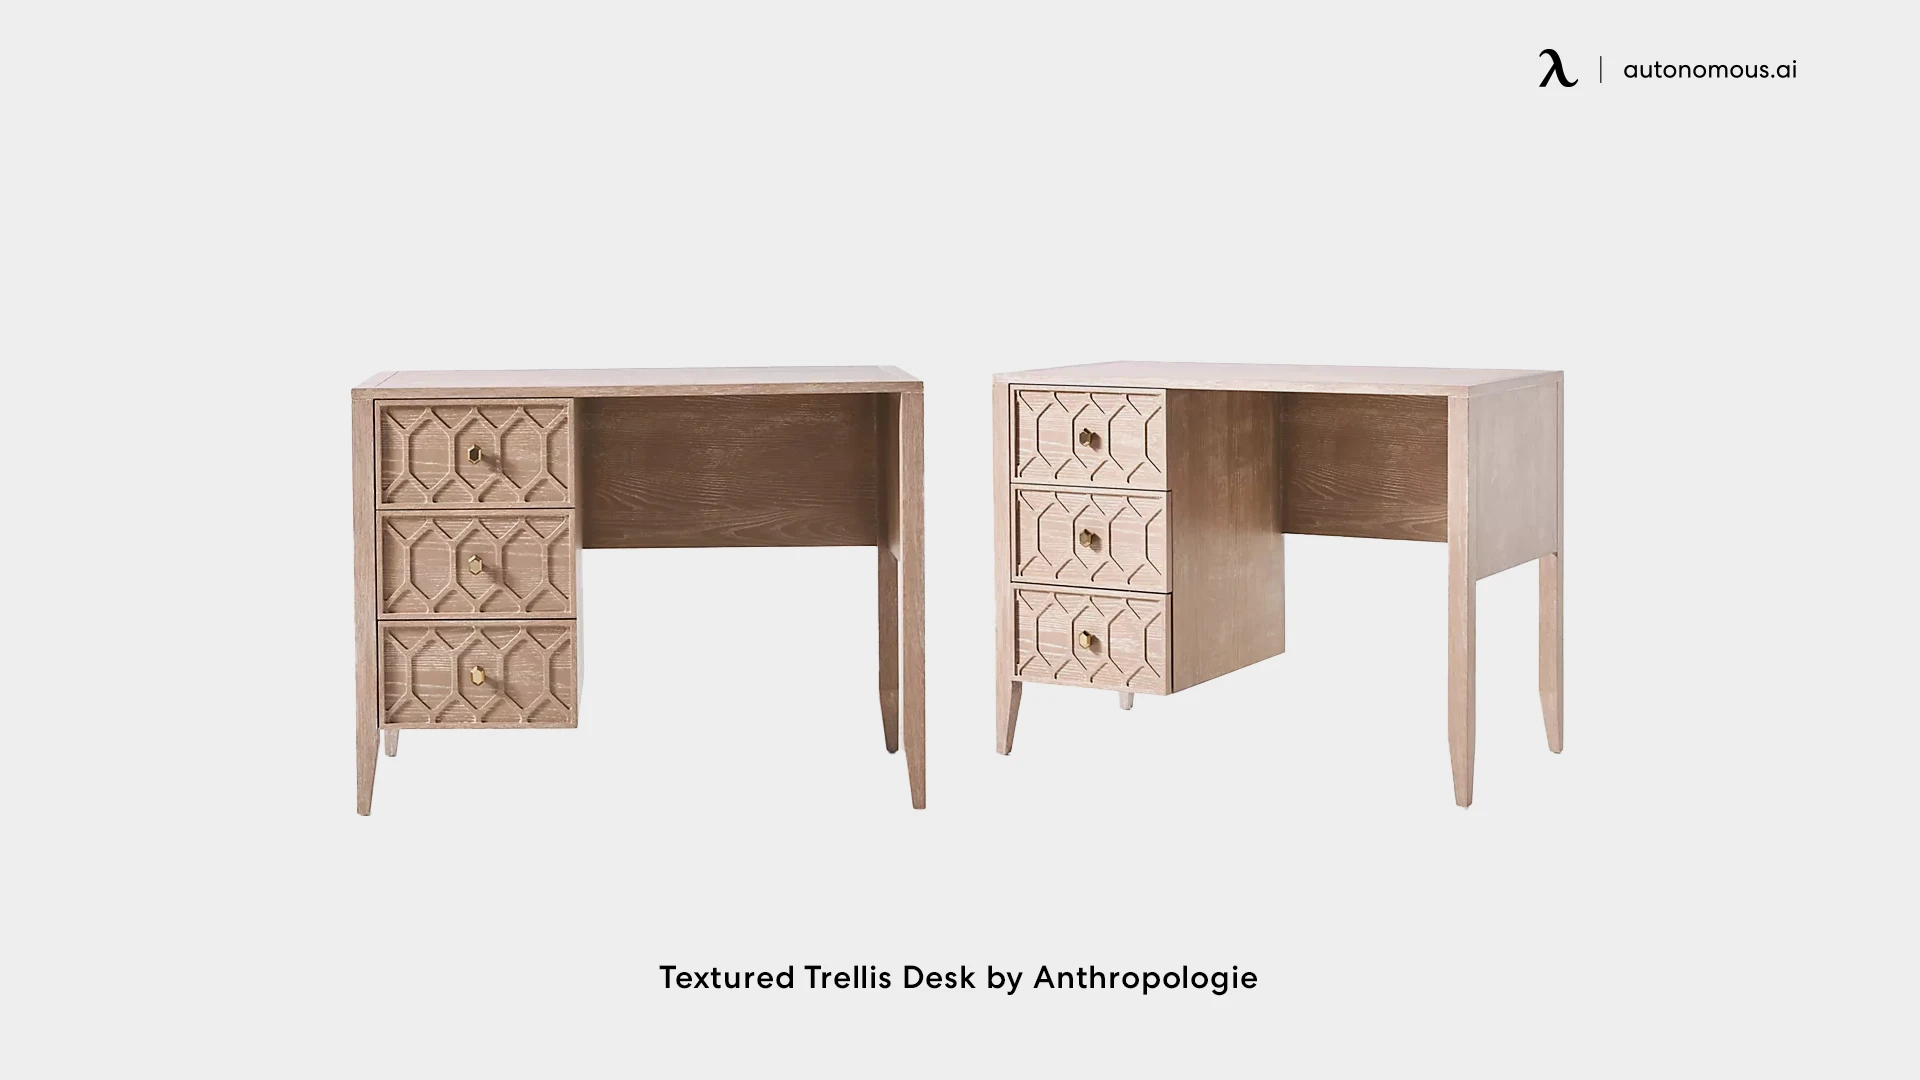 Textured Trellis Desk by Anthropologie